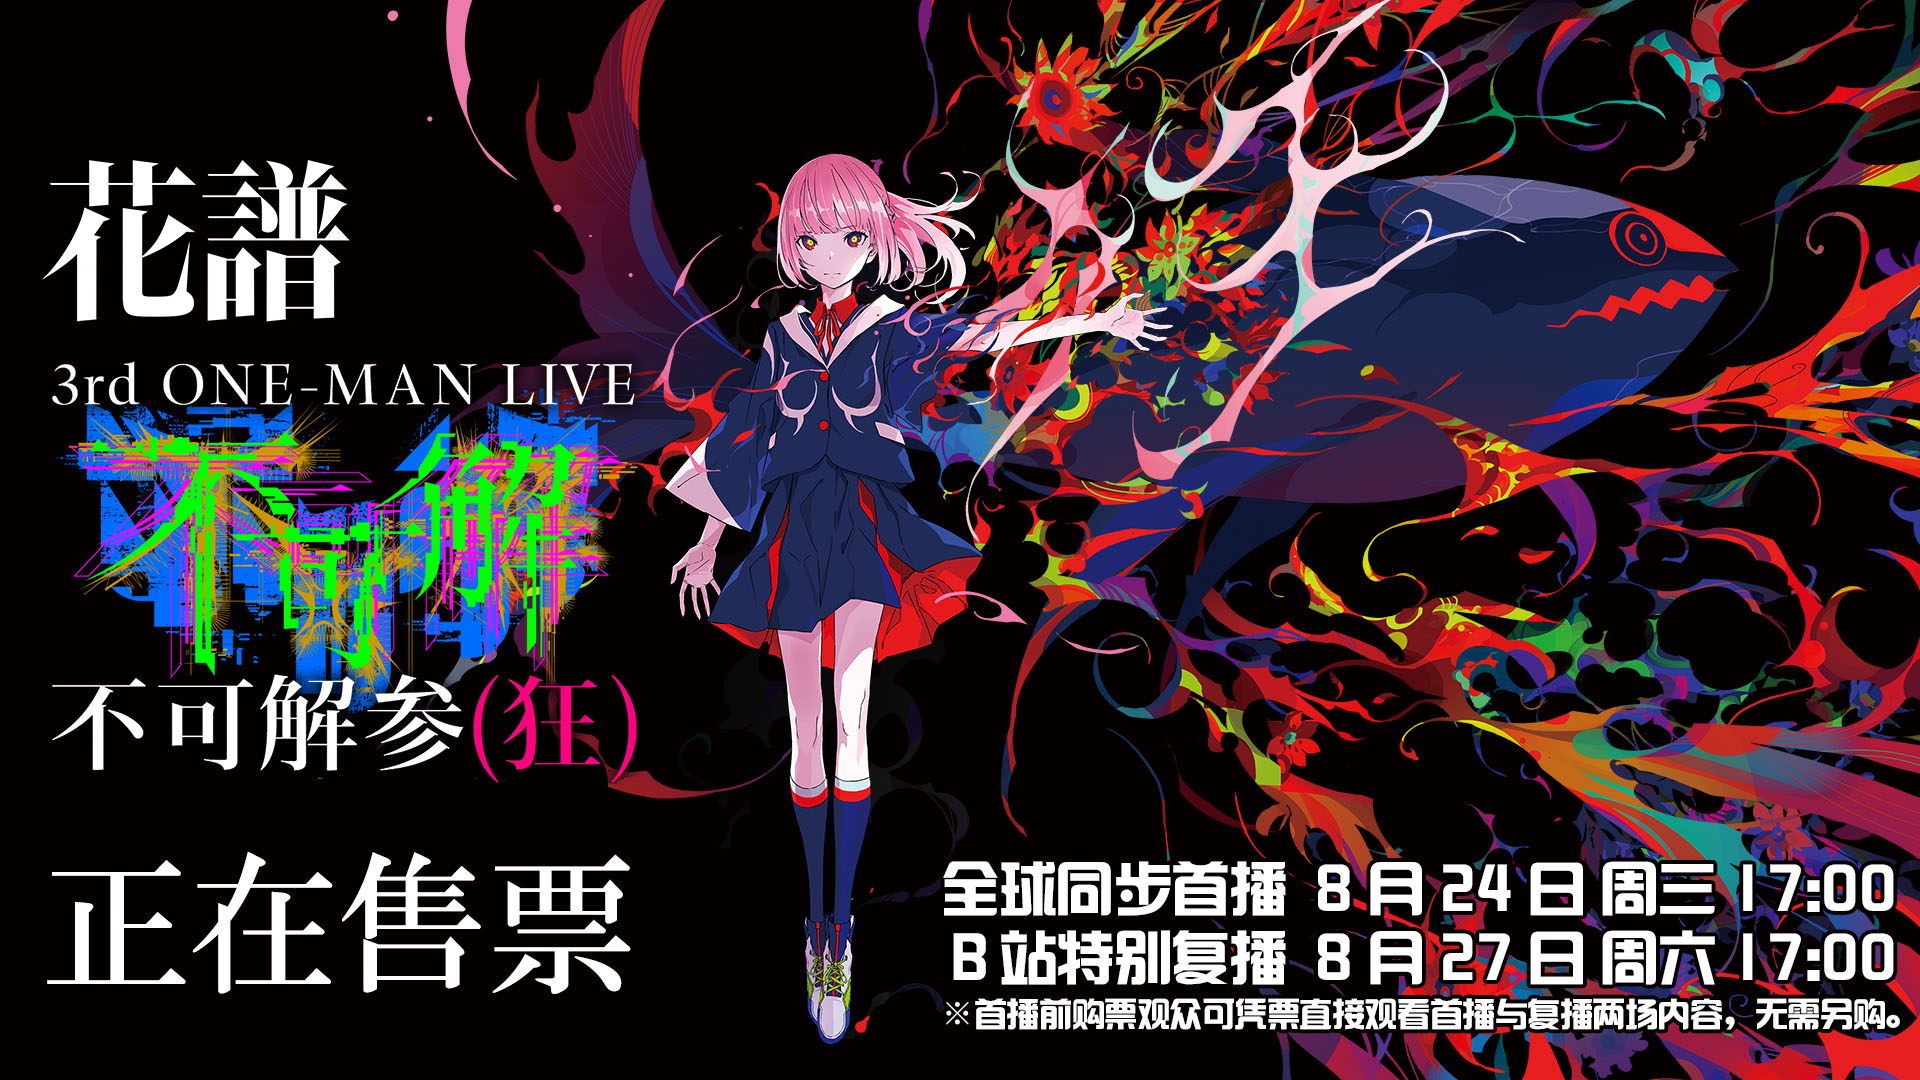 dvd 【花譜】3rd one-man live「不可解参(狂)」blu-ray 